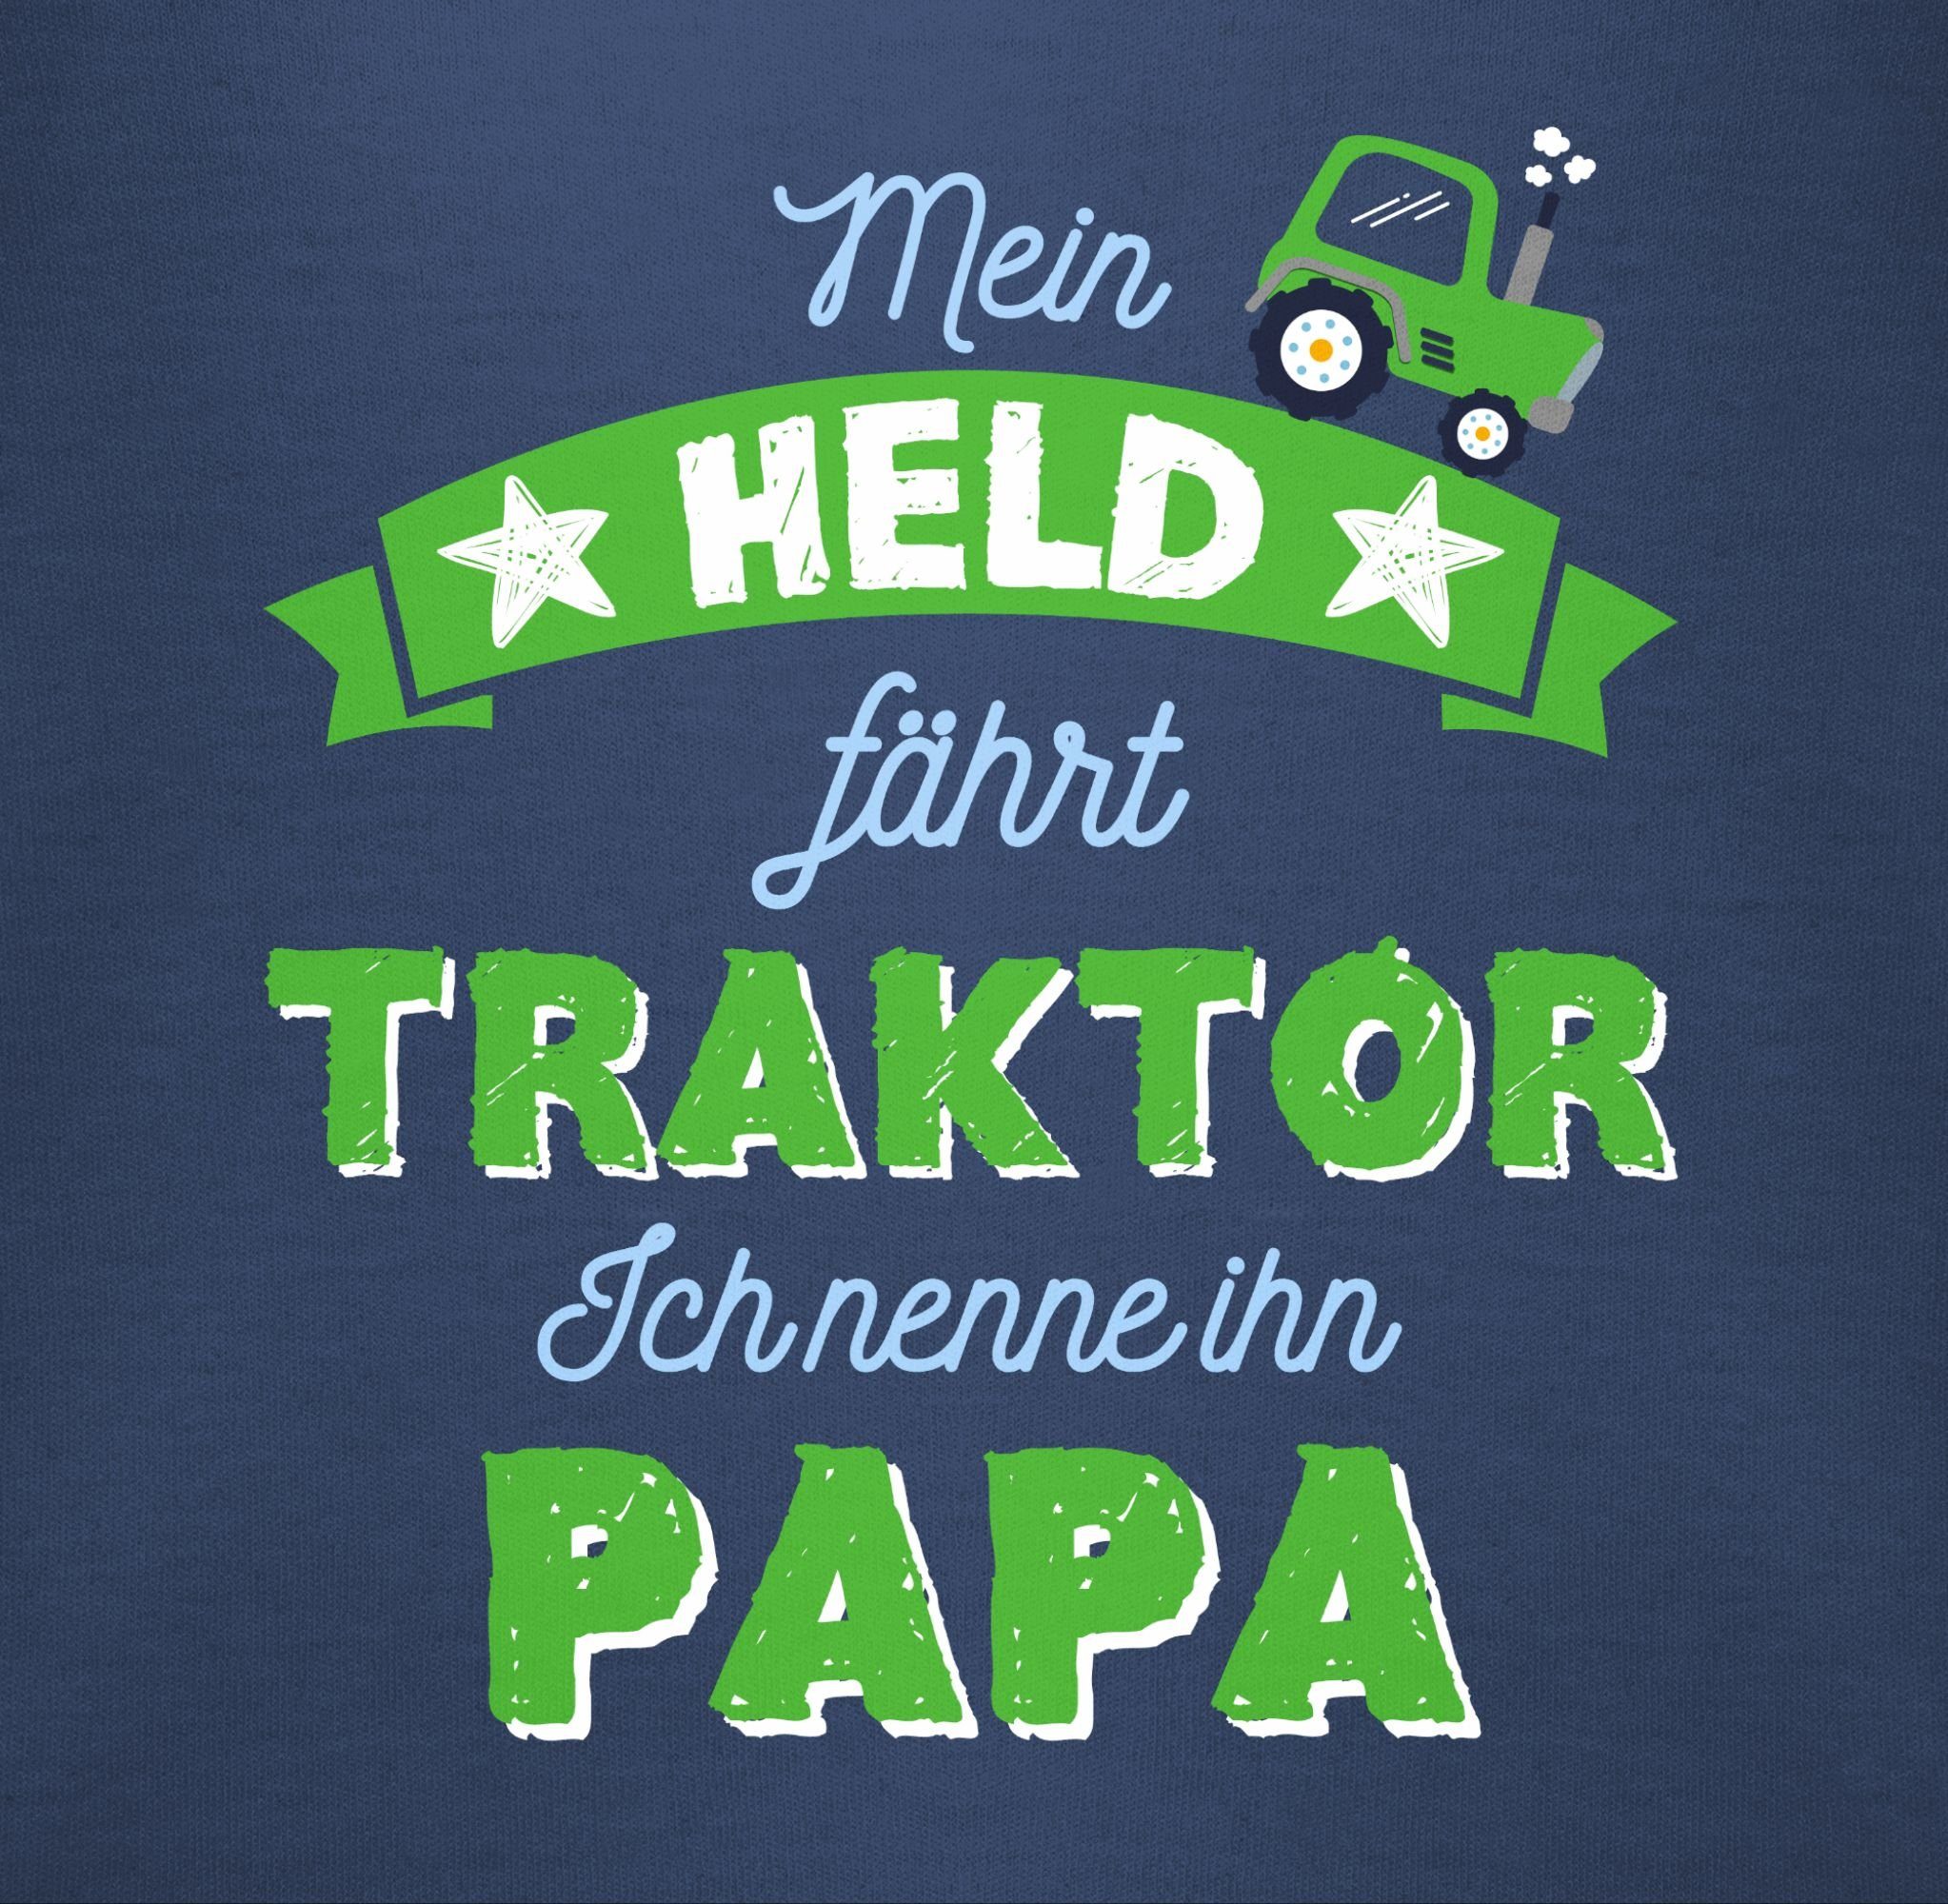 Shirtbody Papa 1 fährt Blau Shirtracer Geschenk Baby Vatertag Traktor Held Navy Mein